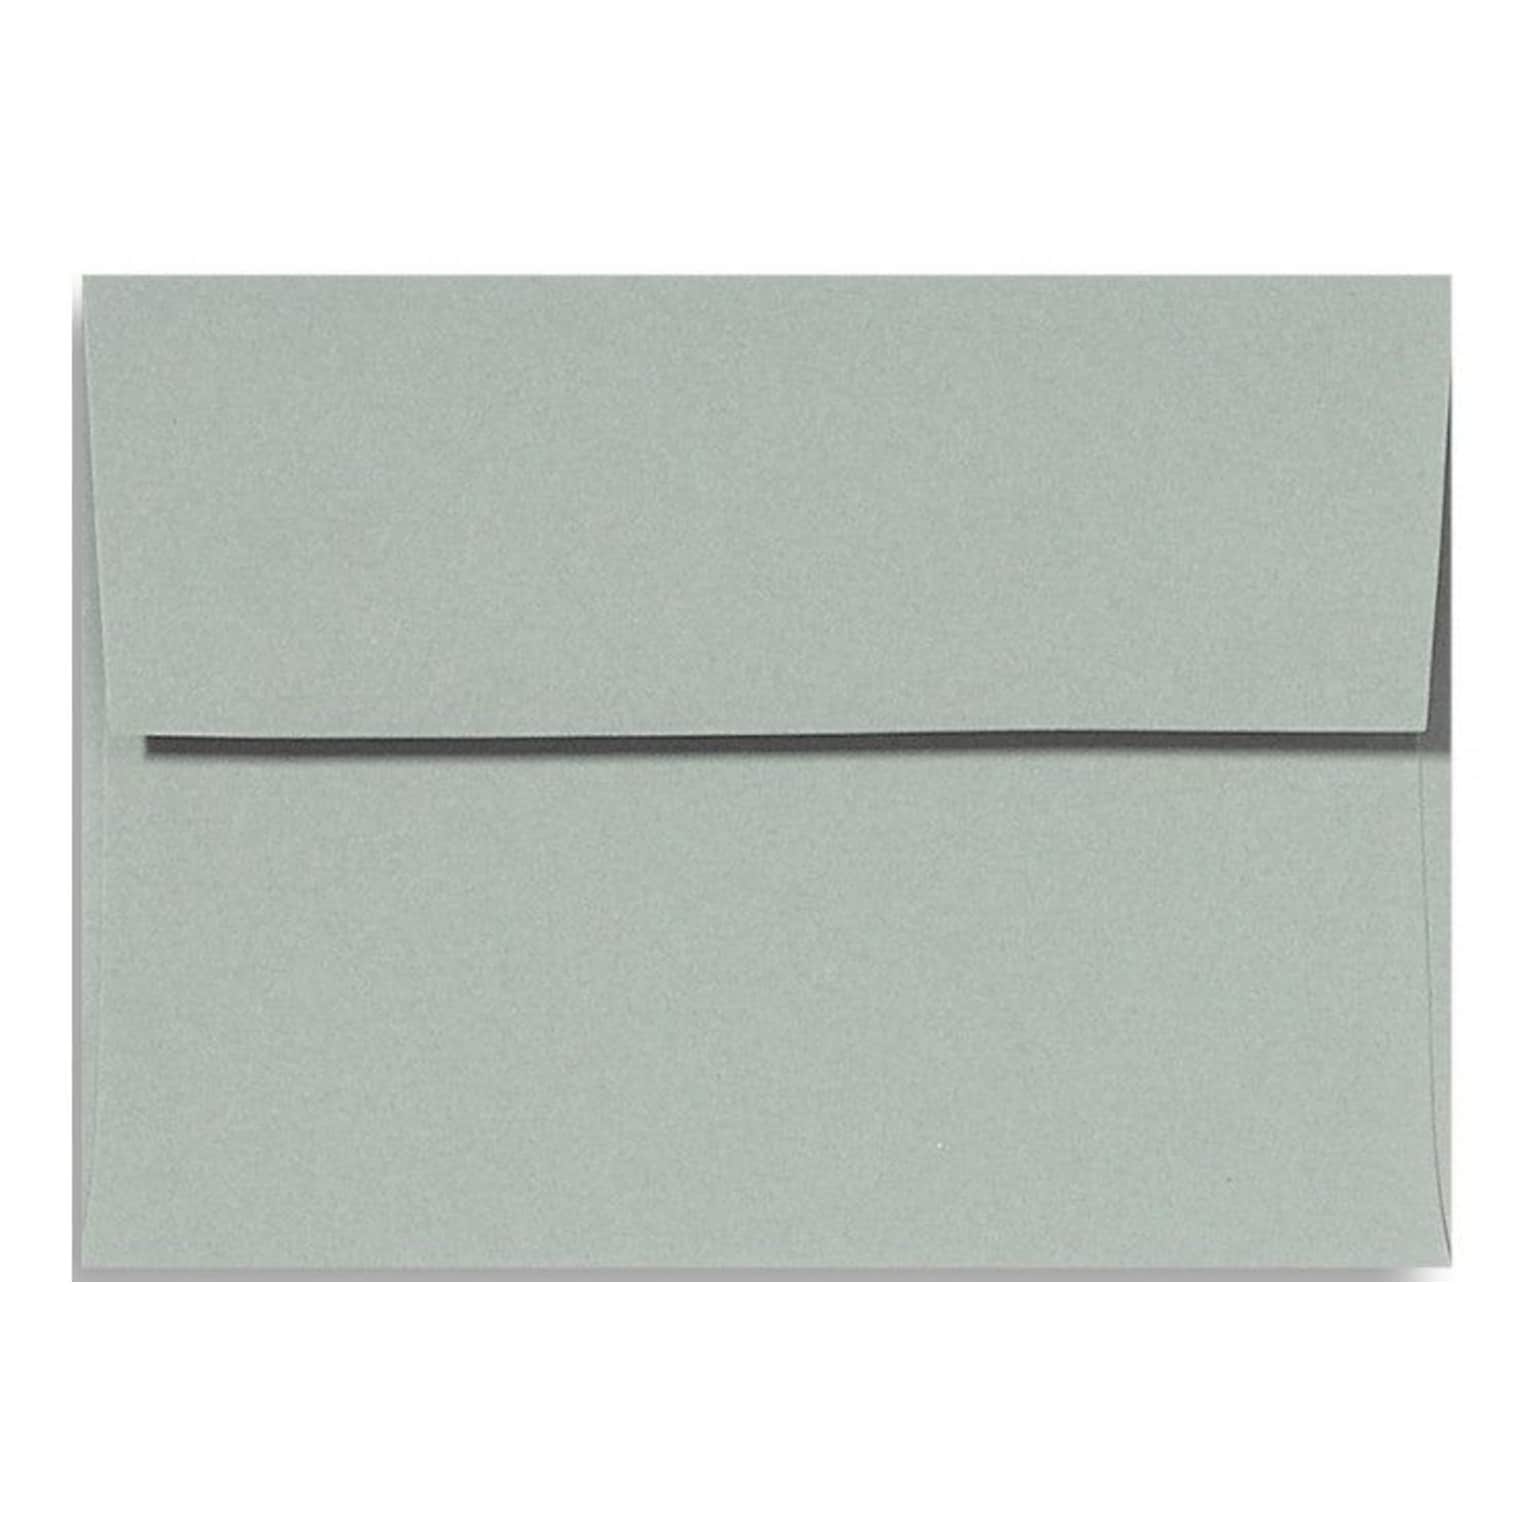 LUX A7 Invitation Envelopes (5 1/4 x 7 1/4) 500/Box, Slate (ET4880-14-500)